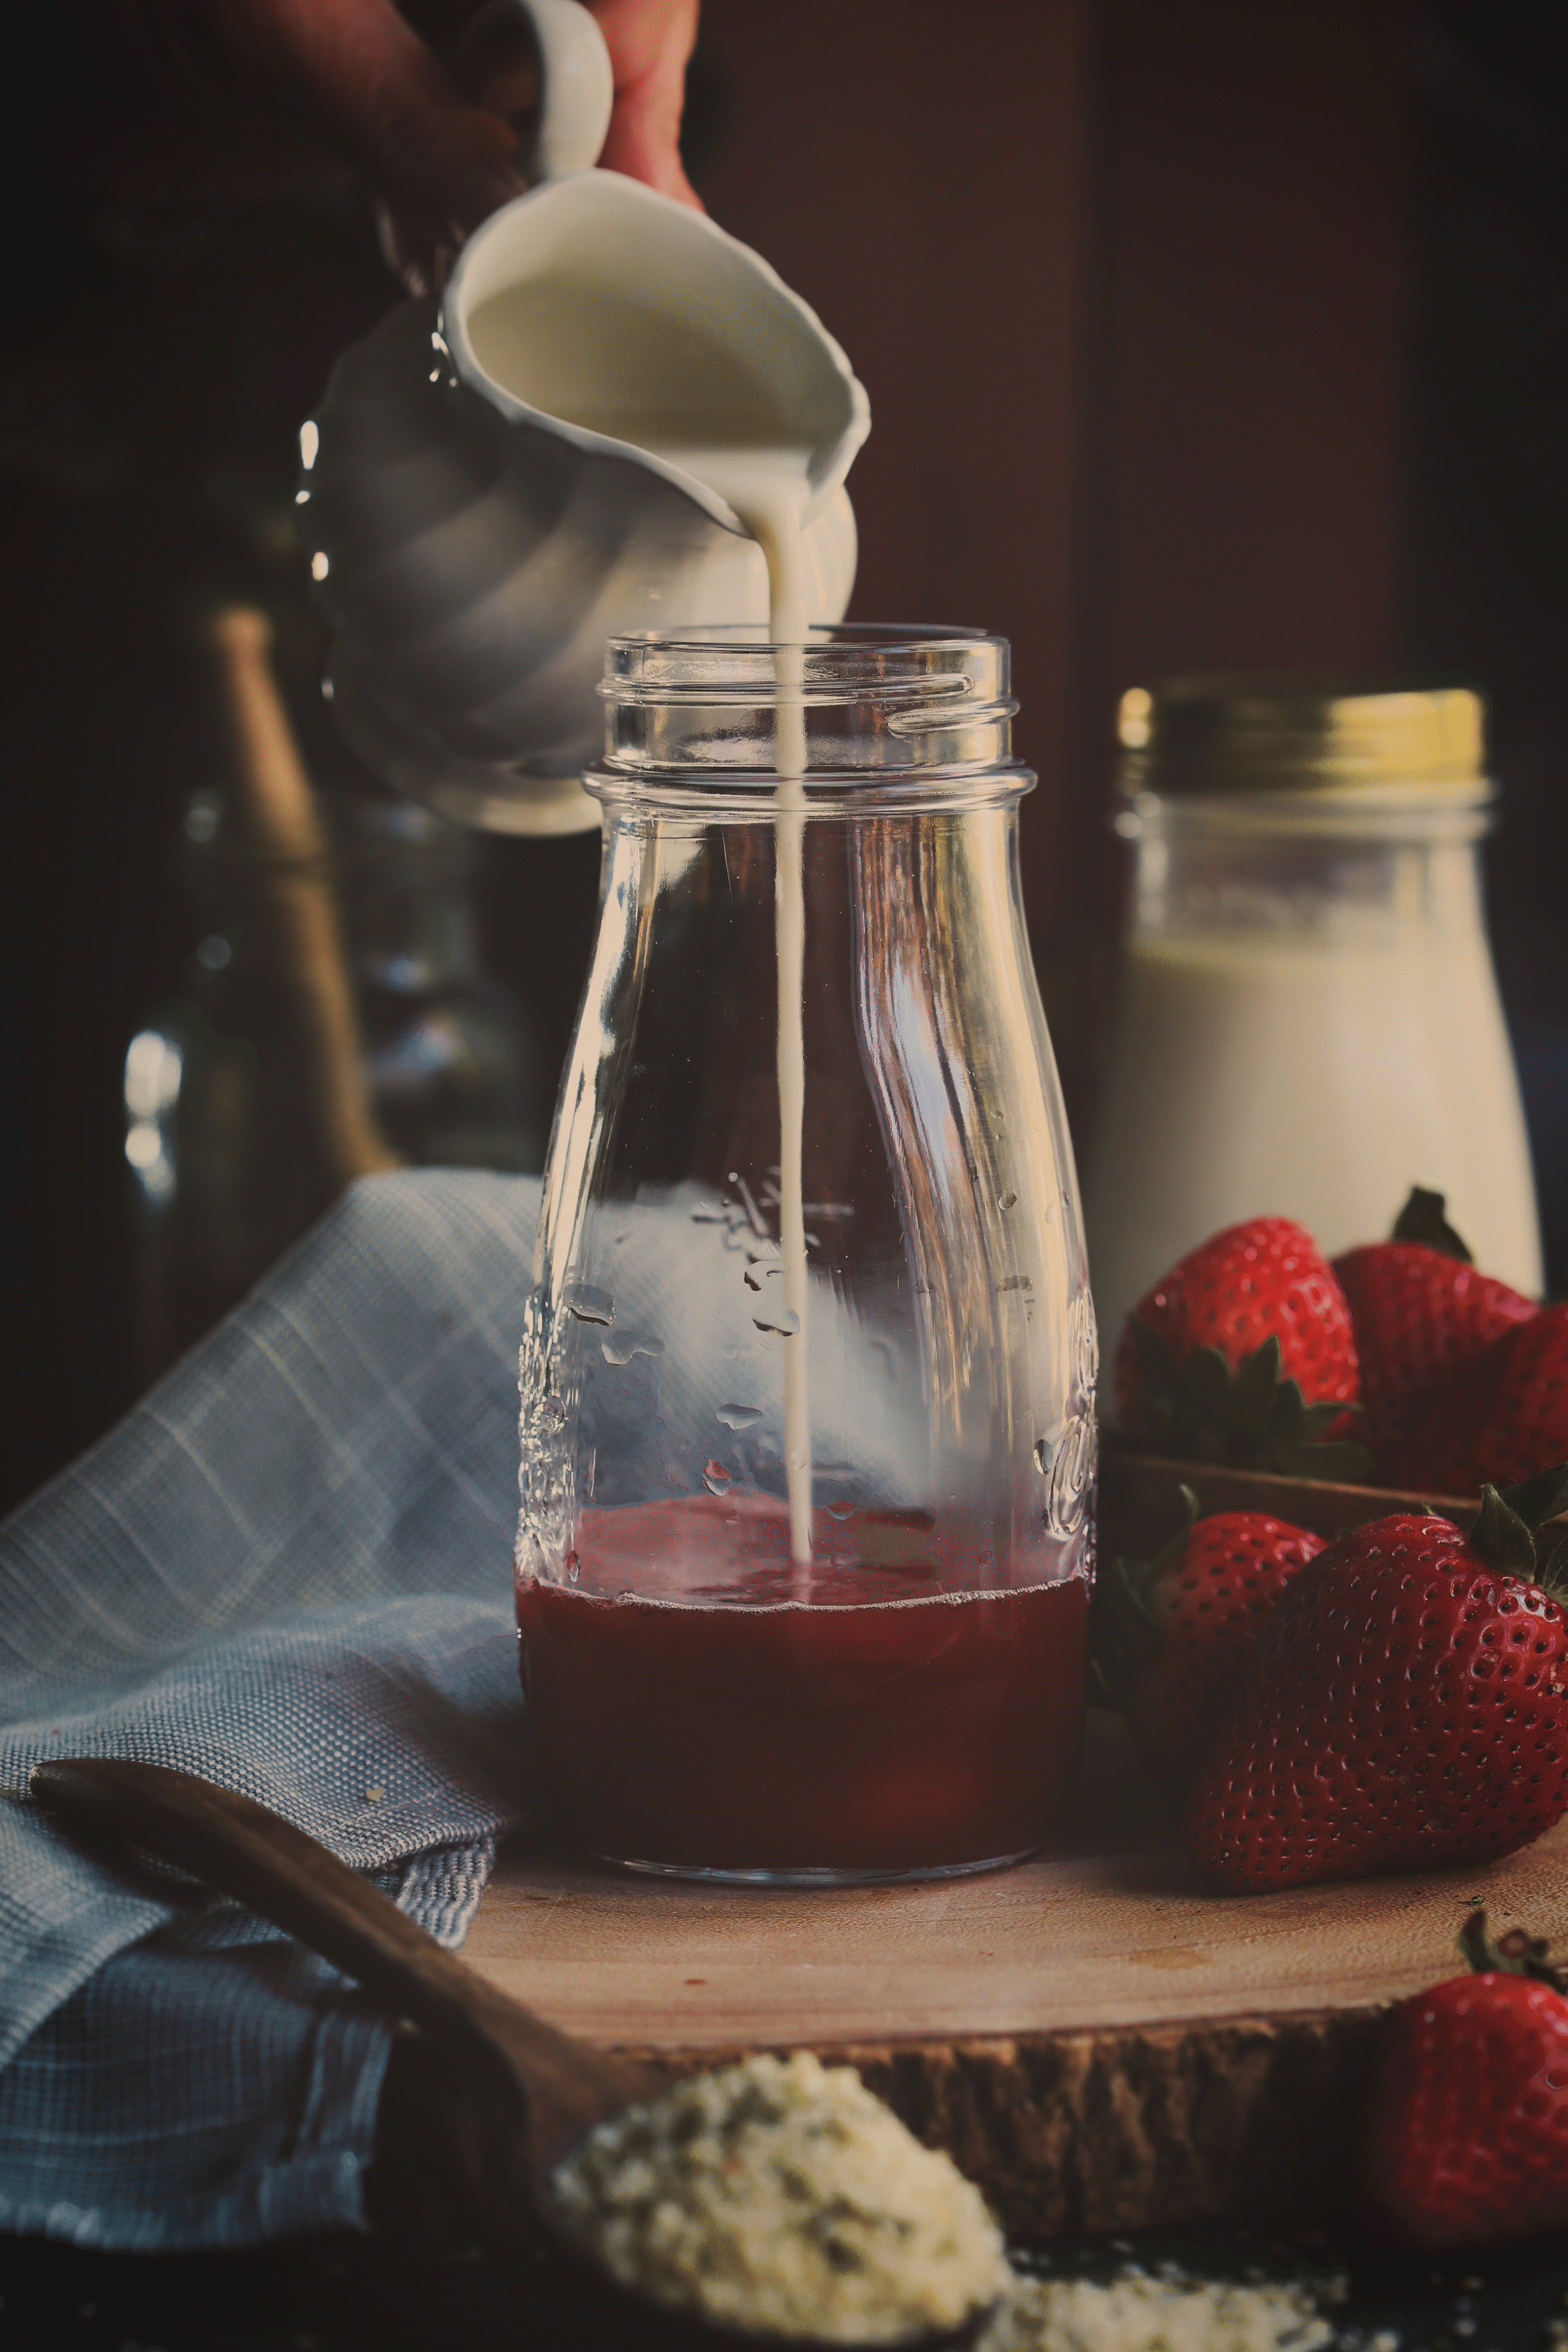 Strawberry hemp milk being poured